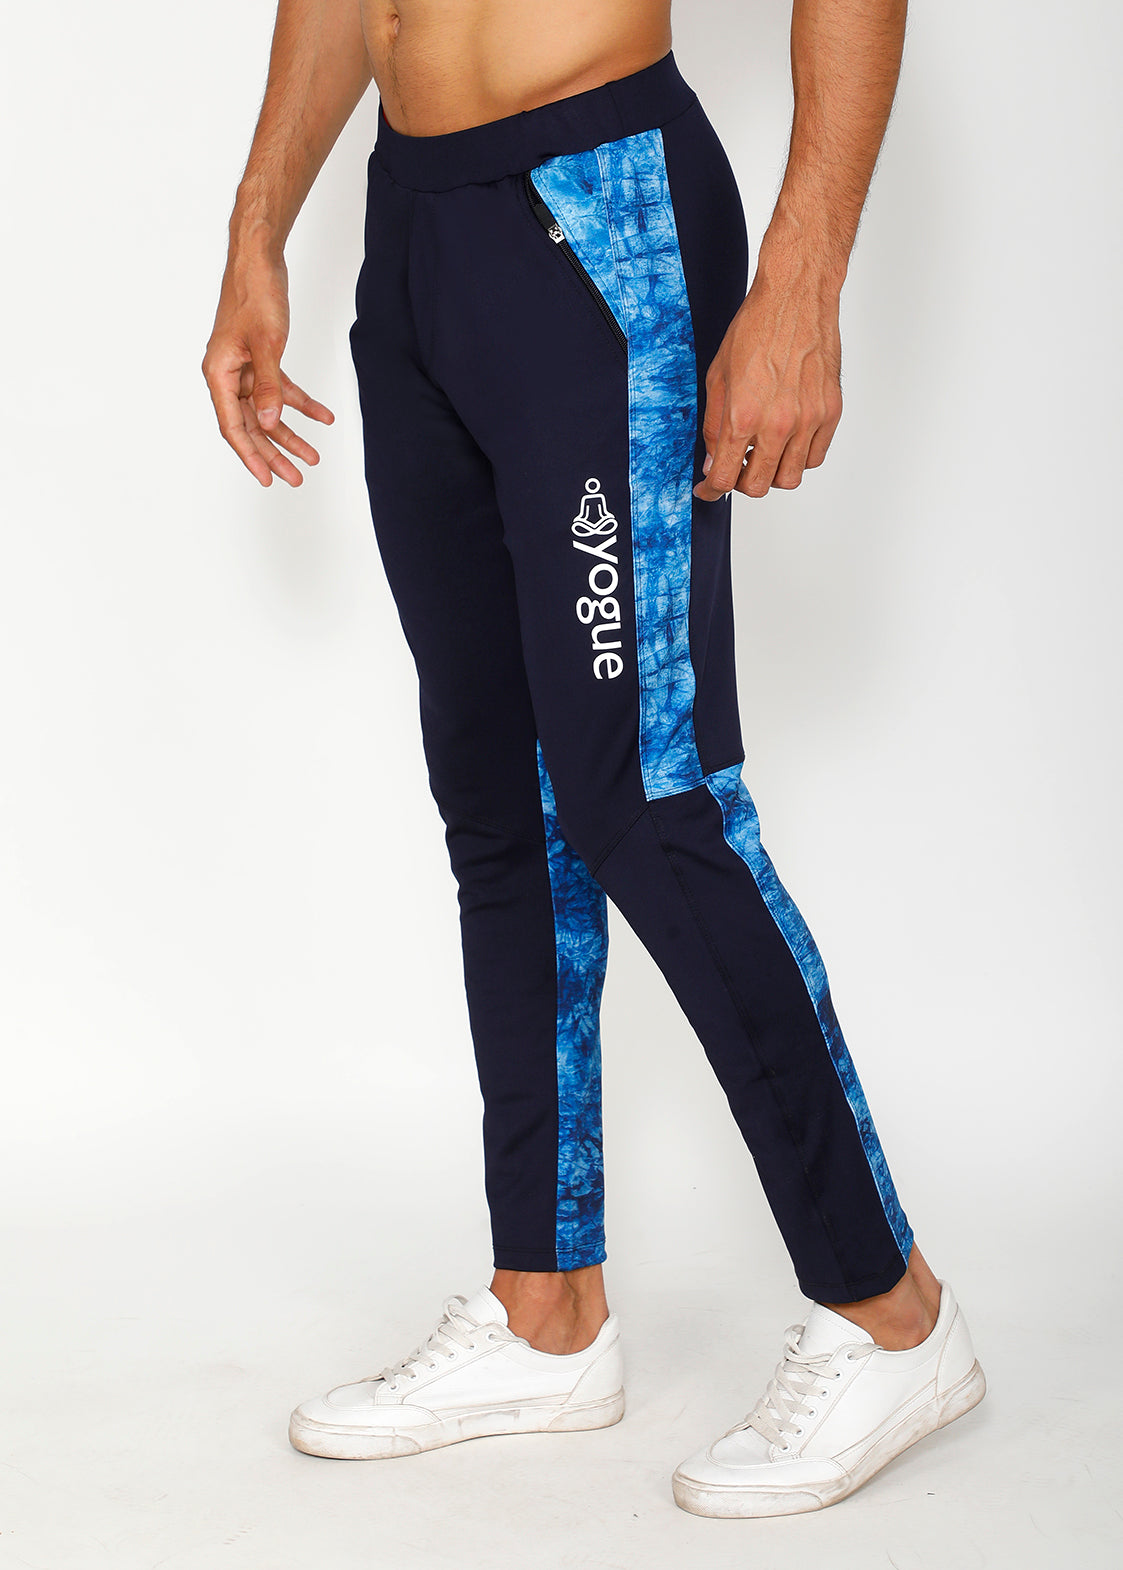 Navy Blue Track Pant for Men - Solid & Cotton Blend Slim Fit | JadeBlue